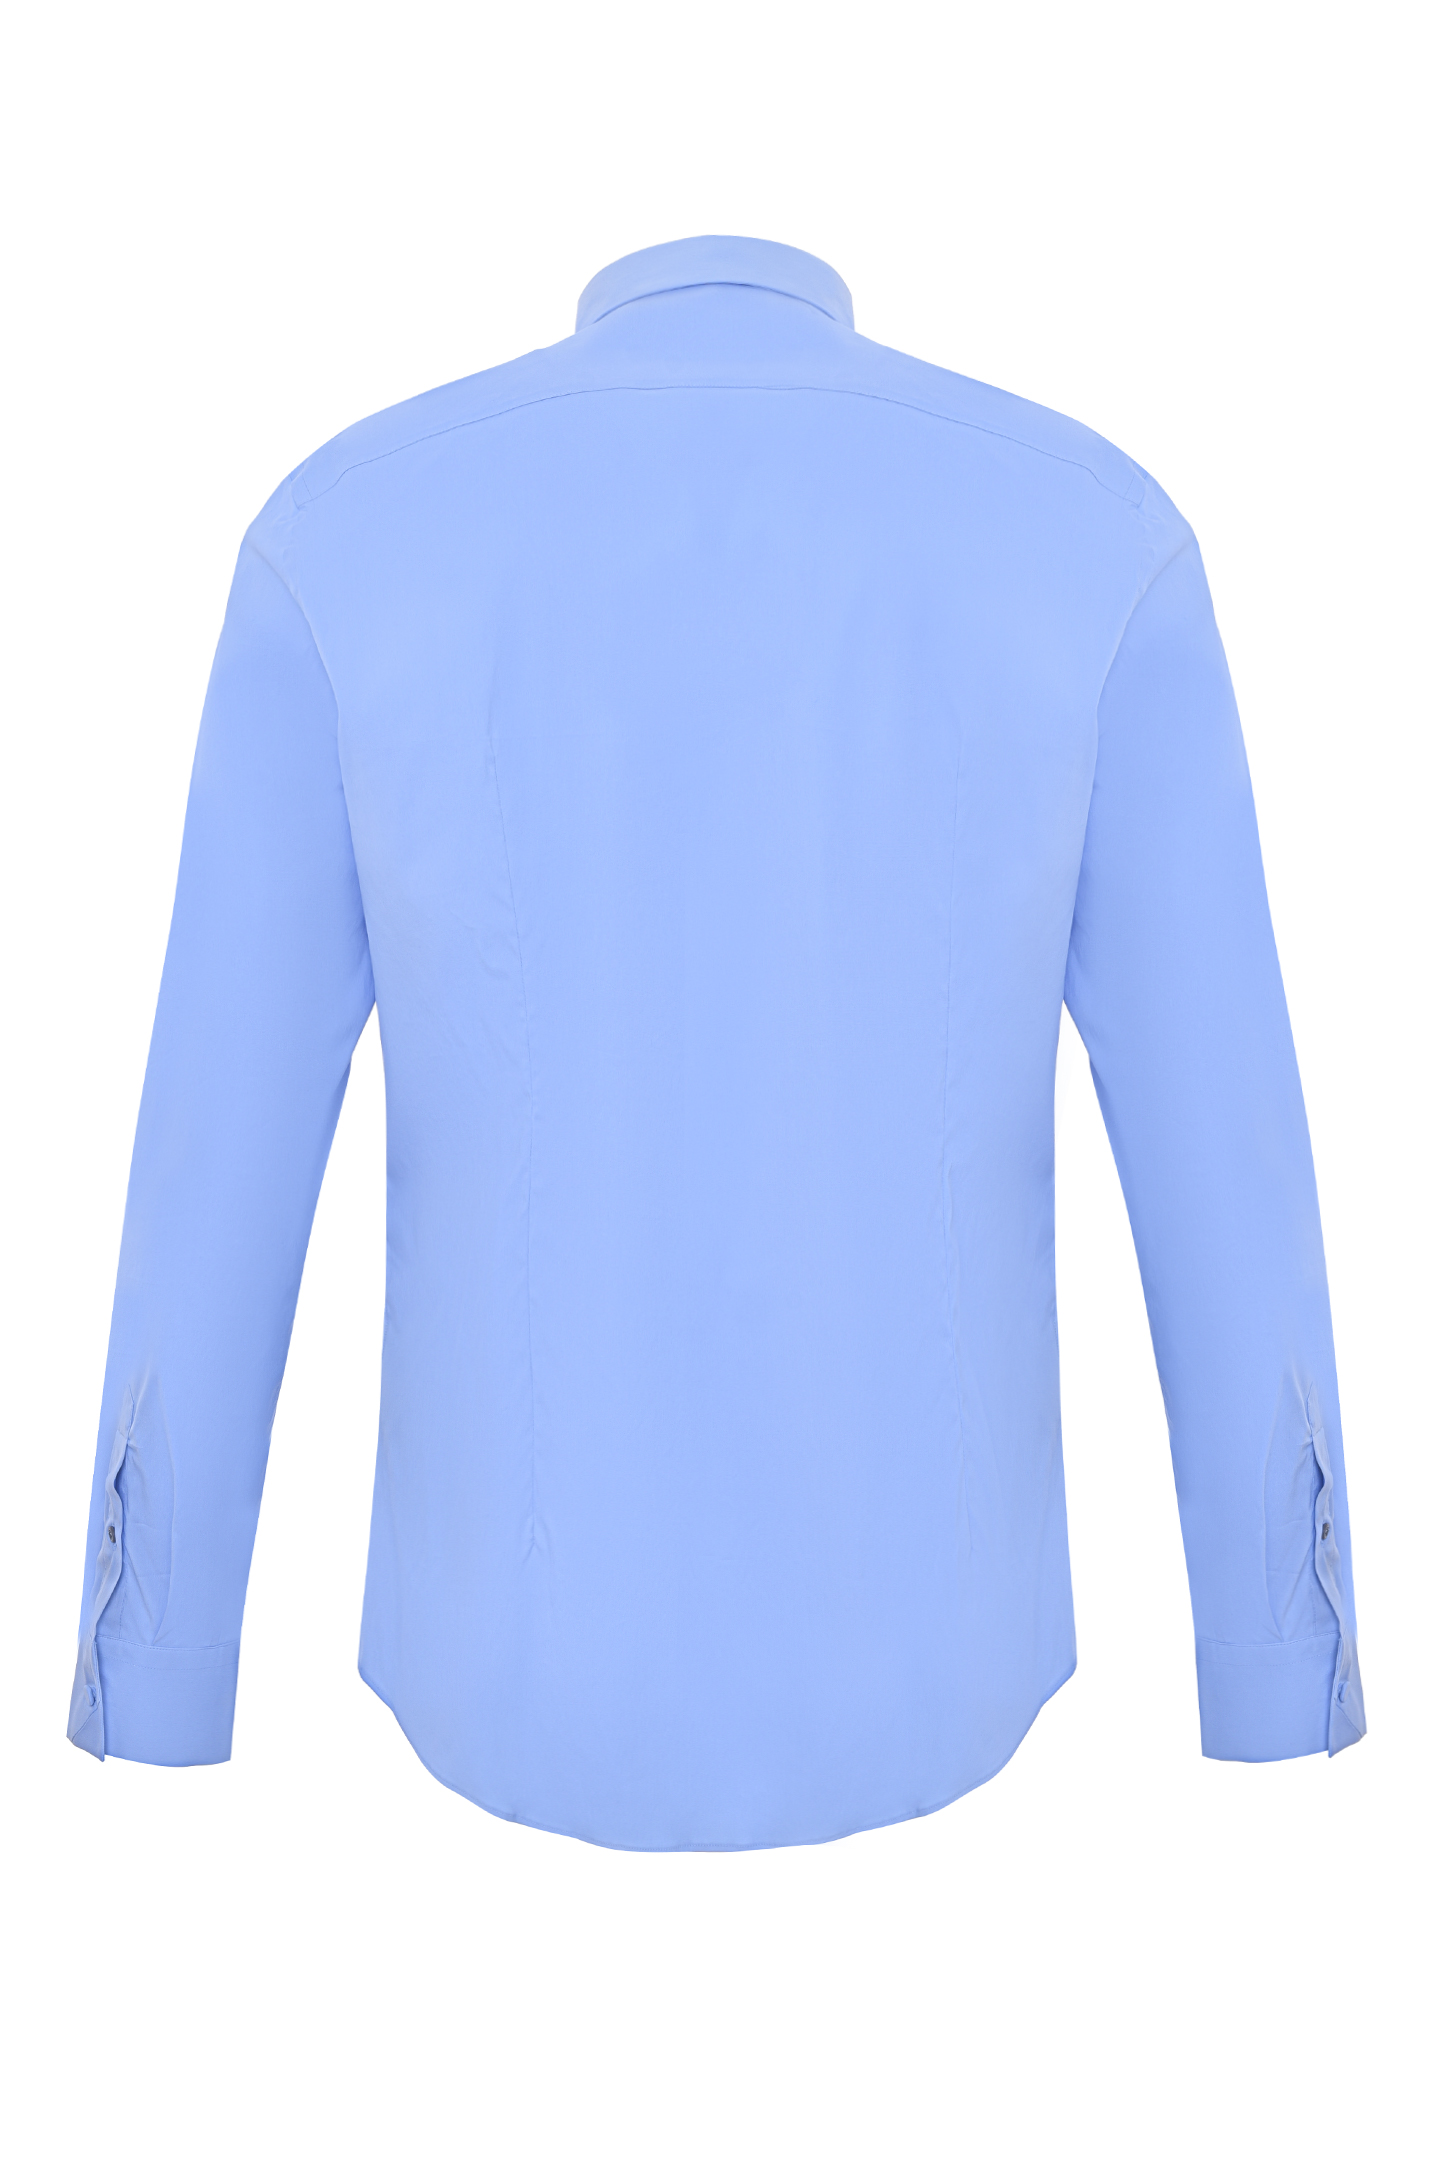 Рубашка PRADA UCN259 F62, цвет: Голубой, Мужской